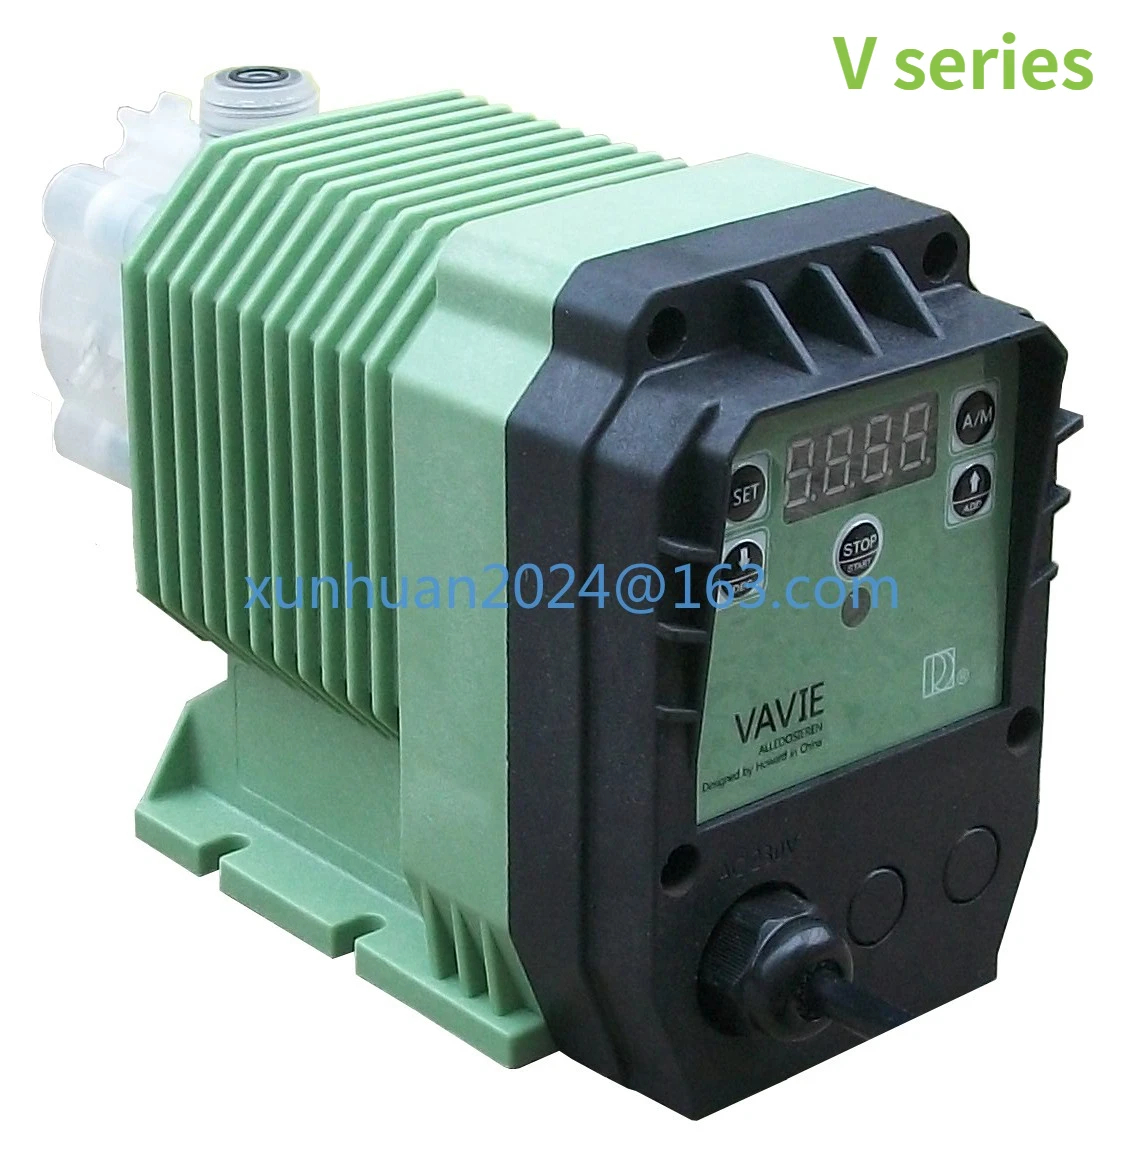 

V series dosing equipment quantitative pump 220/110V acid dosing pump electric diaphragm metering pump automatic electromagnetic